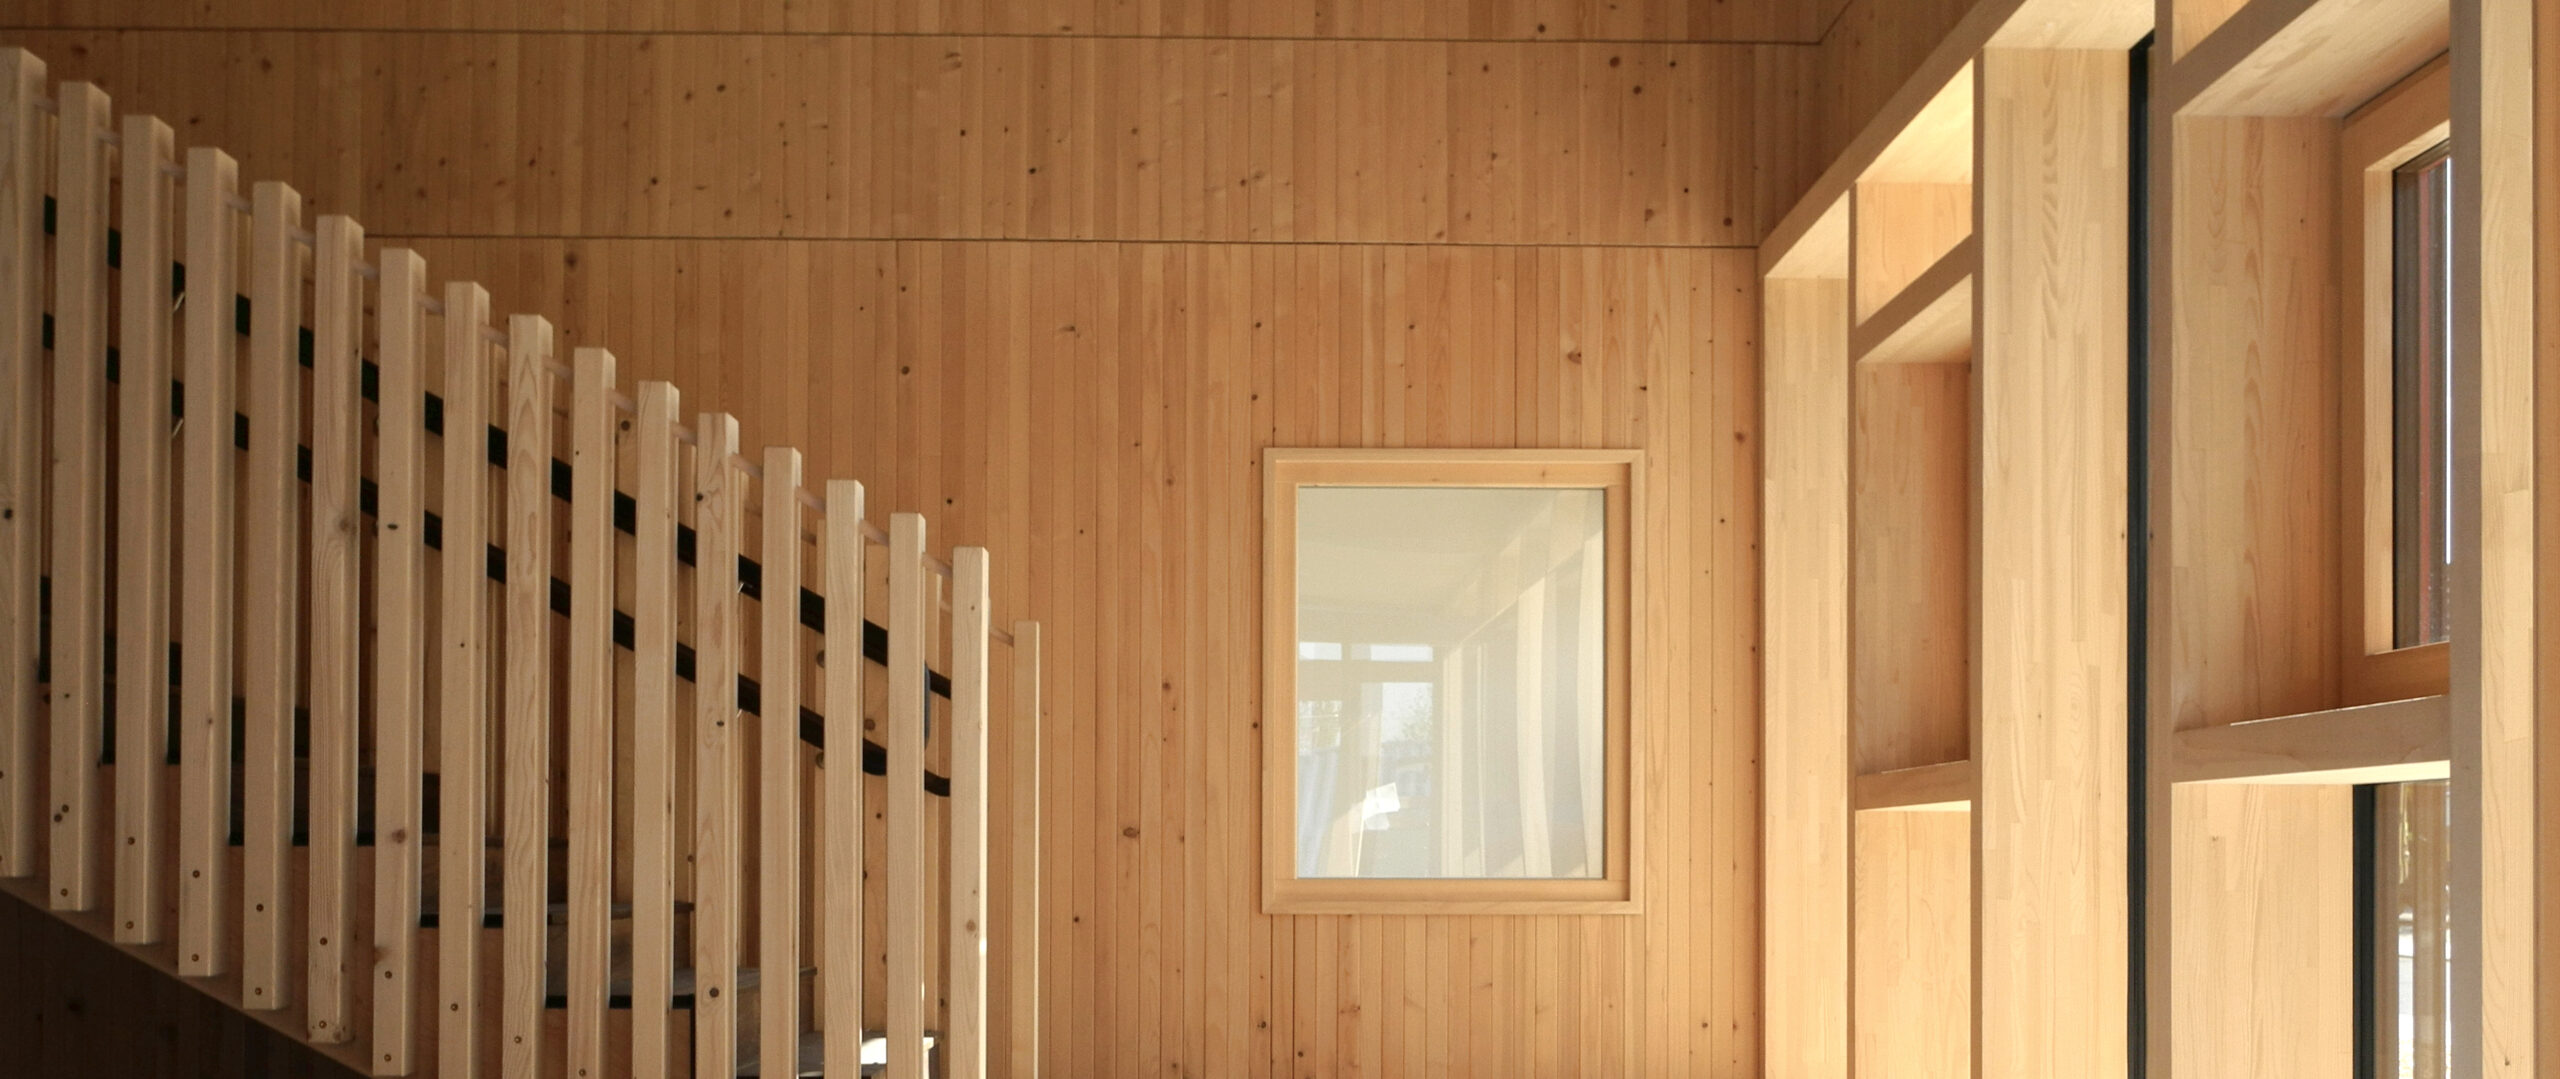 Dübelholzwände im Treppenhaus und Holz-Pfosten-Riegel-Fassade